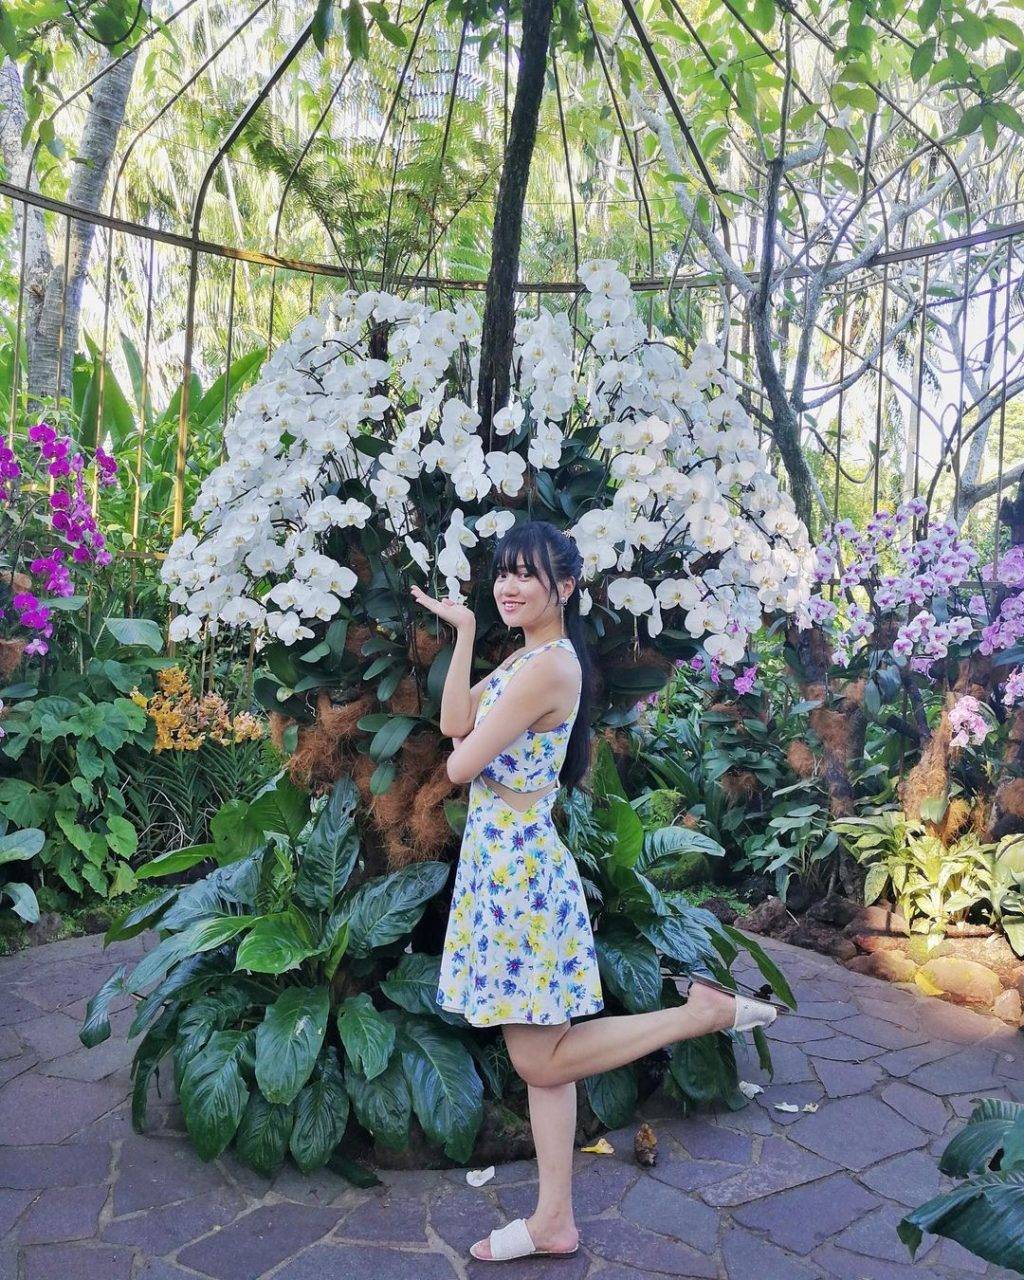 全球最大胡姬花卉展示地“國家胡姬花園”✨清新秀麗、沁人心脾，帶你認識和了解我們的國花😎